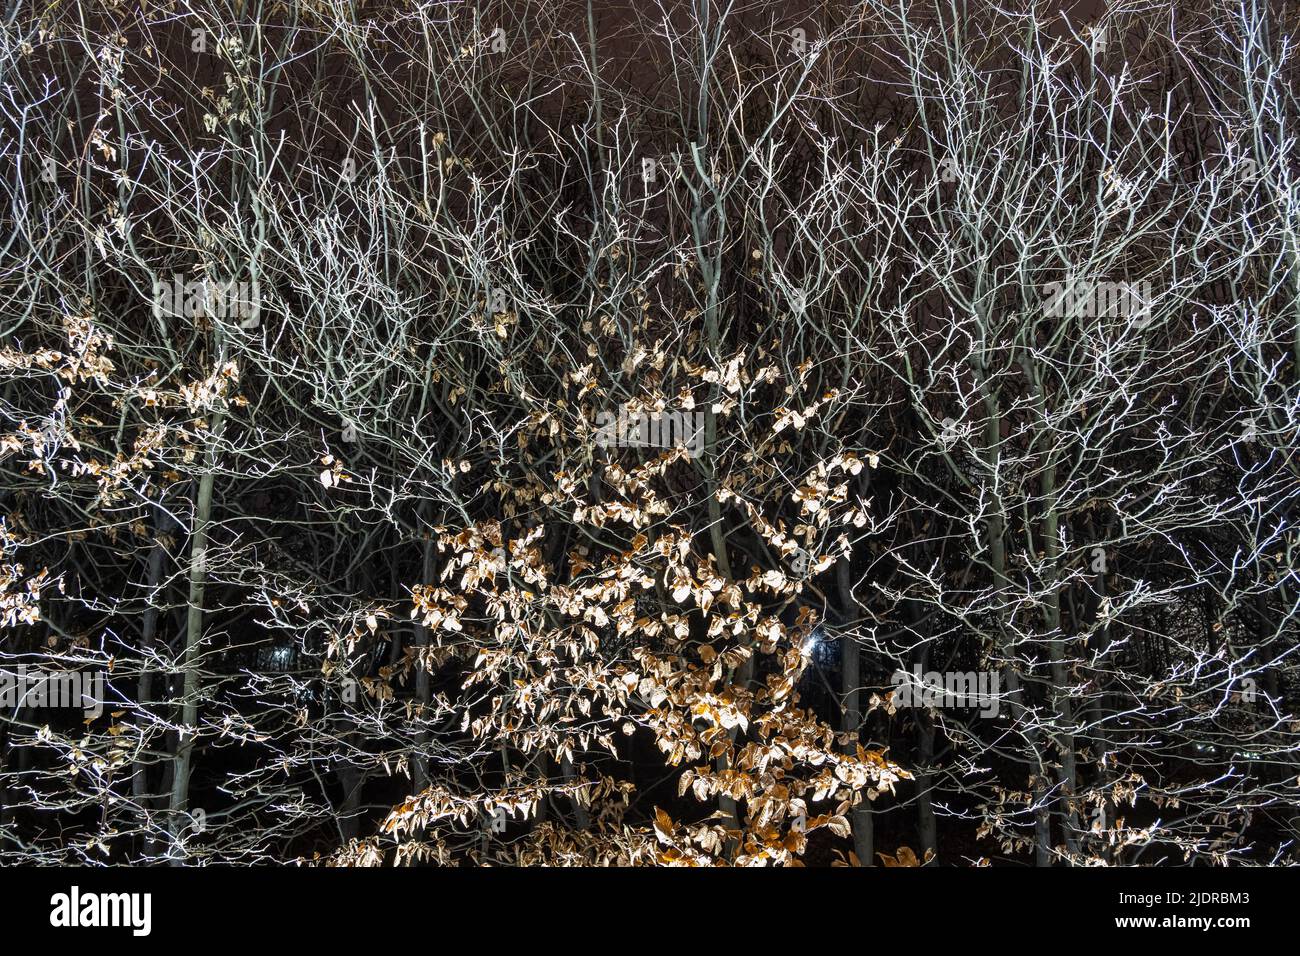 Abstrait mur vivant fait d'arbres à feuilles caduques en hiver illuminé la nuit dans un parc. Banque D'Images